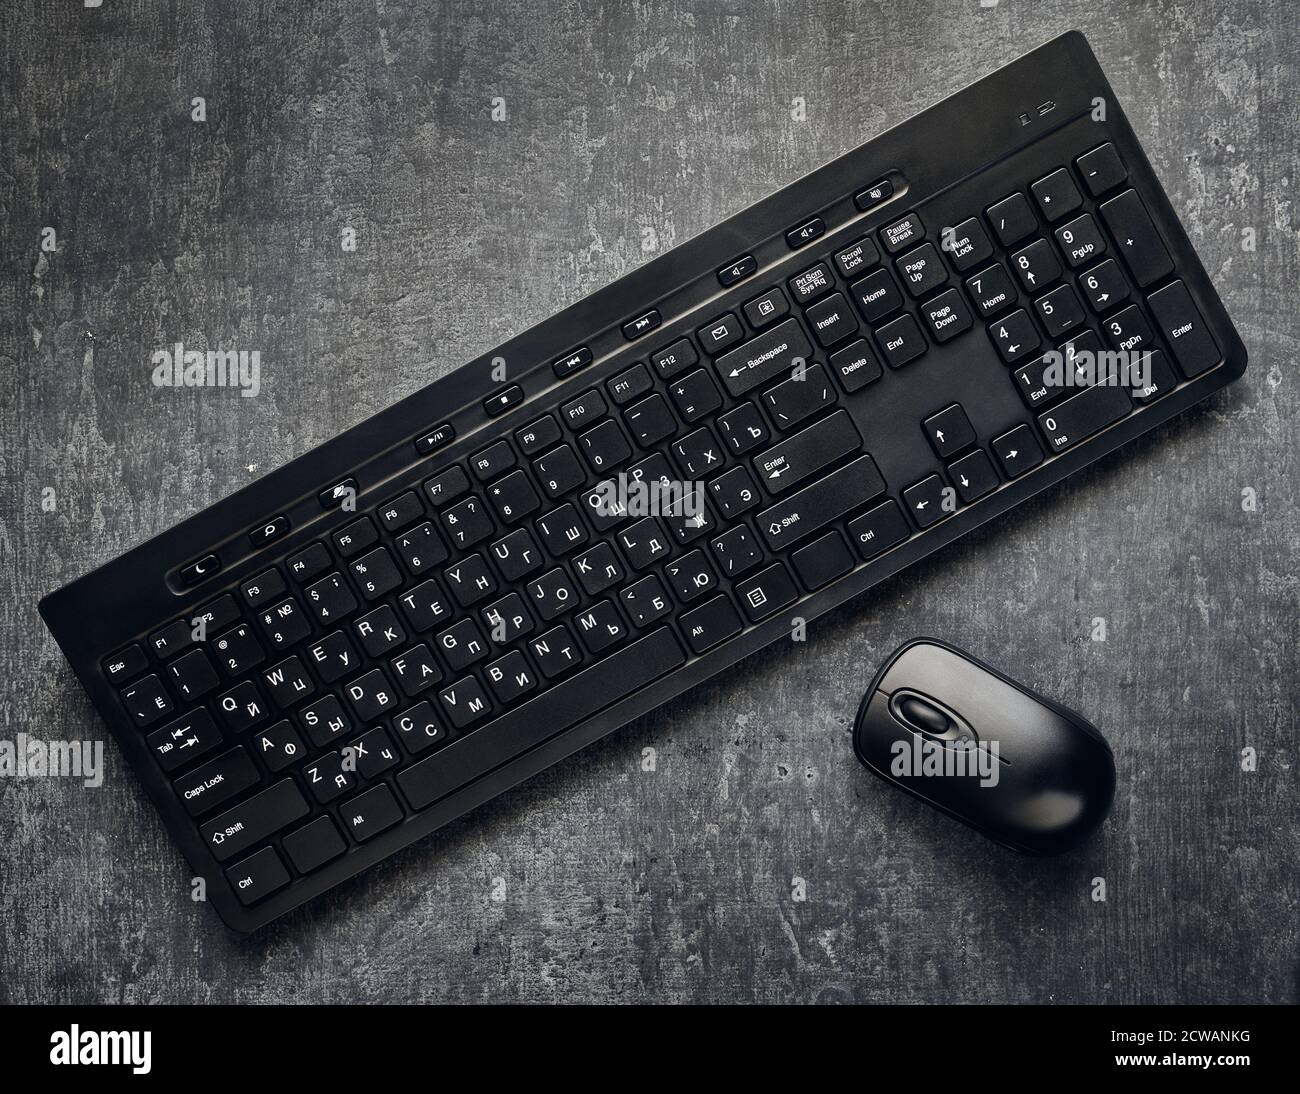 Wireless-Computer-Tastatur und Maus auf grauem Hintergrund, Nahaufnahme, sind stilisiert Stockfoto